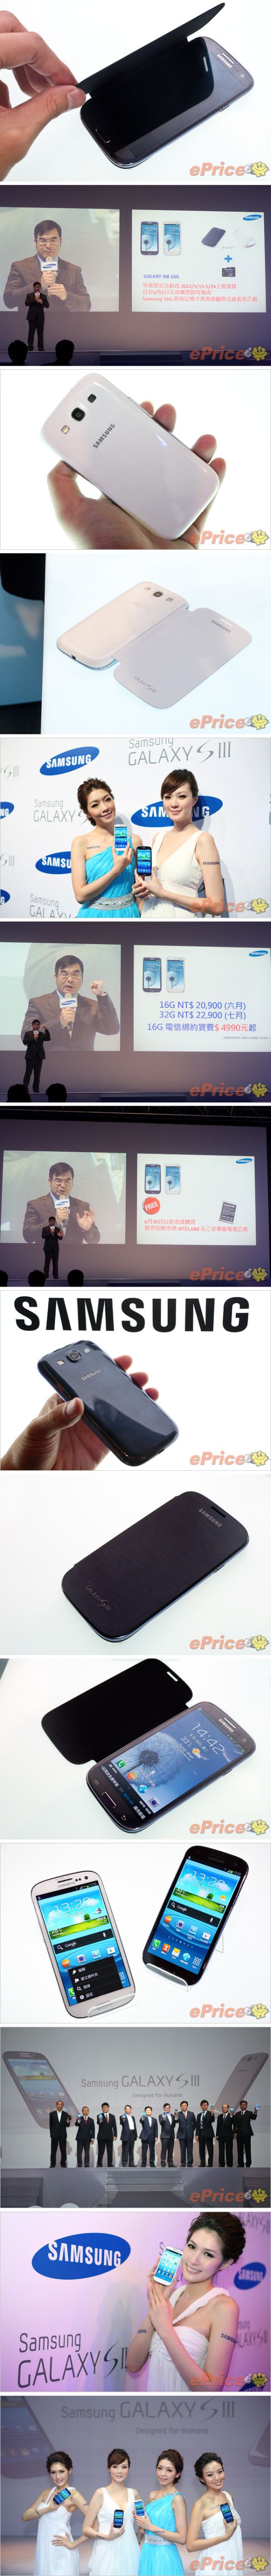 Mennyibe is kerül majd a Samsung Galaxy S III?